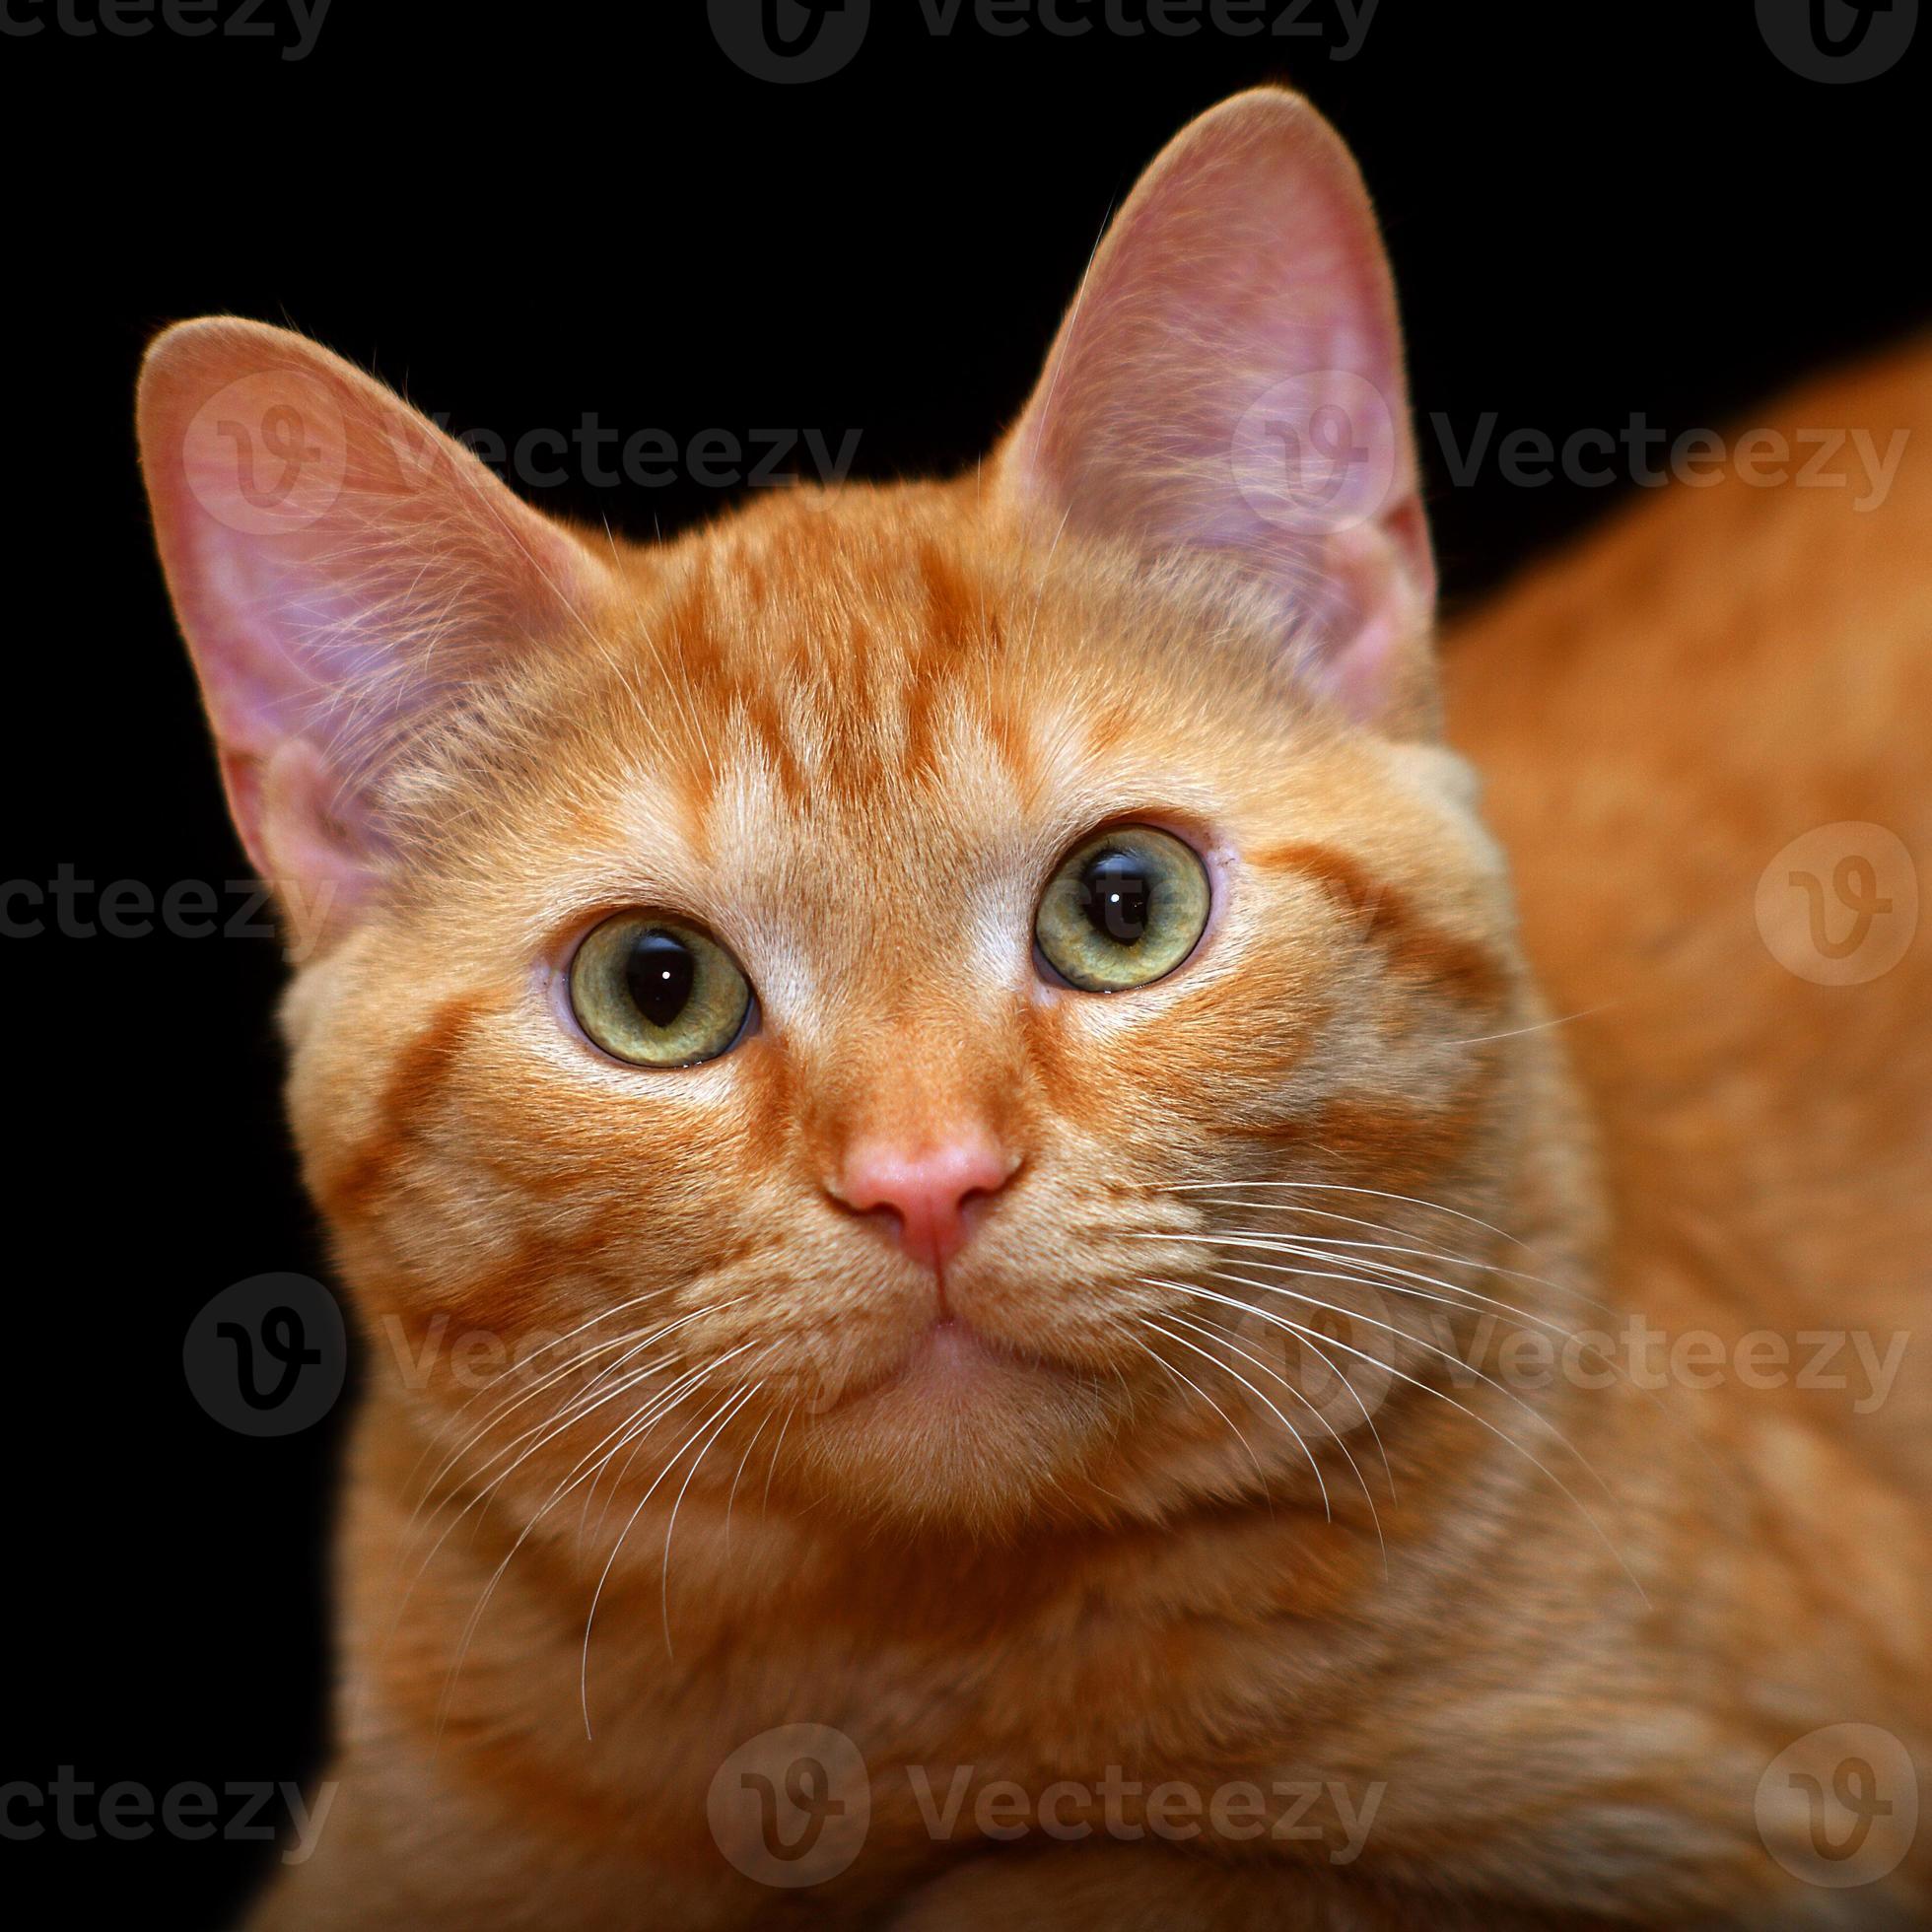 Gato anaranjado foto